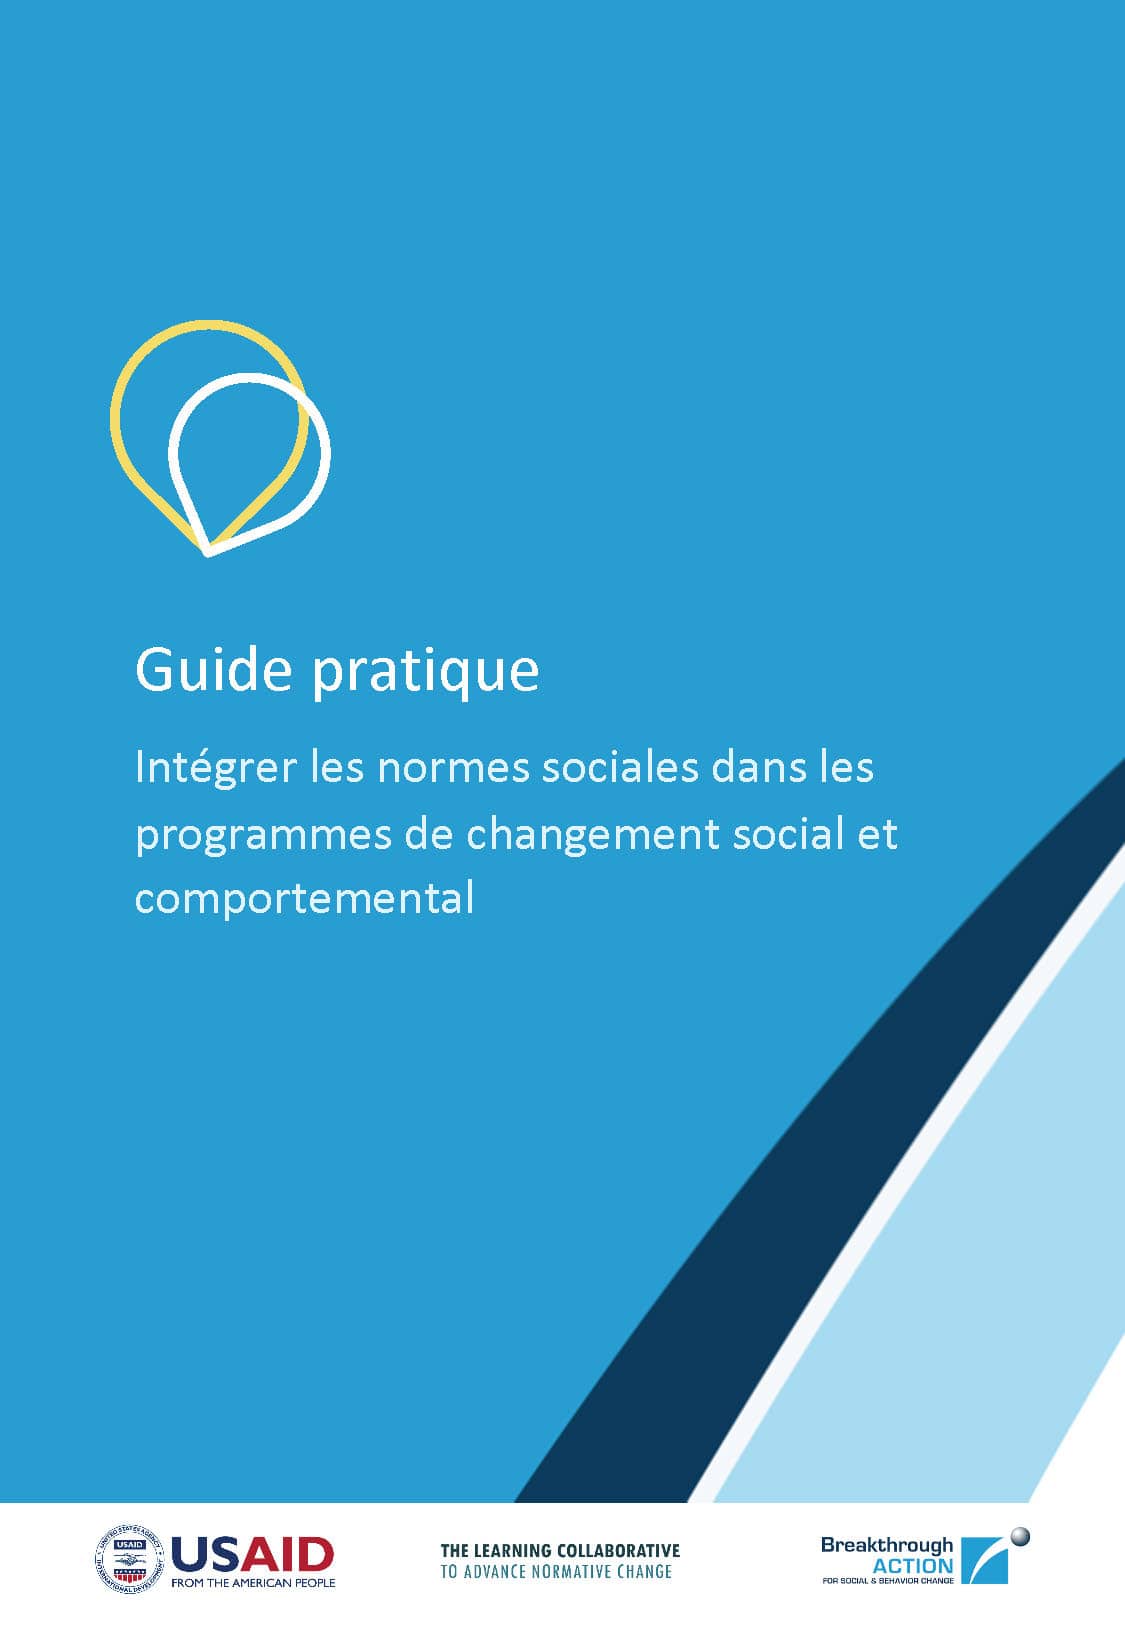 Guide practique - Intégrer les normes sociales dans les programmes de changement social et comportemental